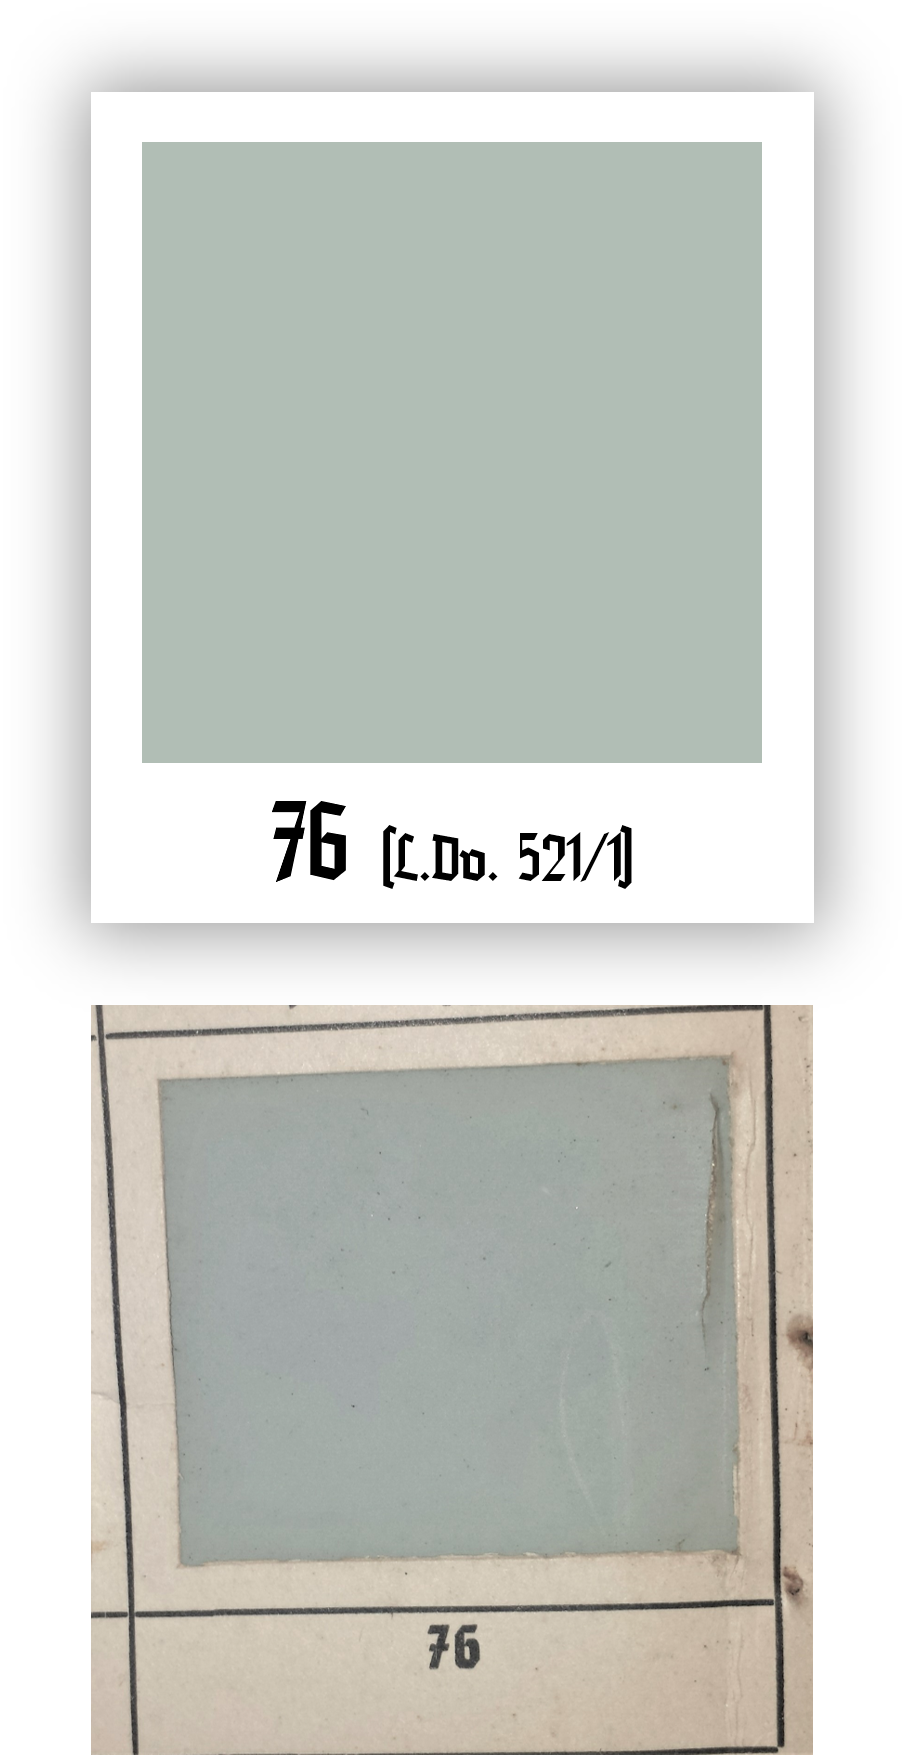 Un dettaglio del campione di RLM 76 riportato dal L.Dv. 521/1 del 1941. Tuttavia, bisogna sempre tener presente che il colore presente su questo campione non rispecchia interamente la vernice applicata sui velivoli.